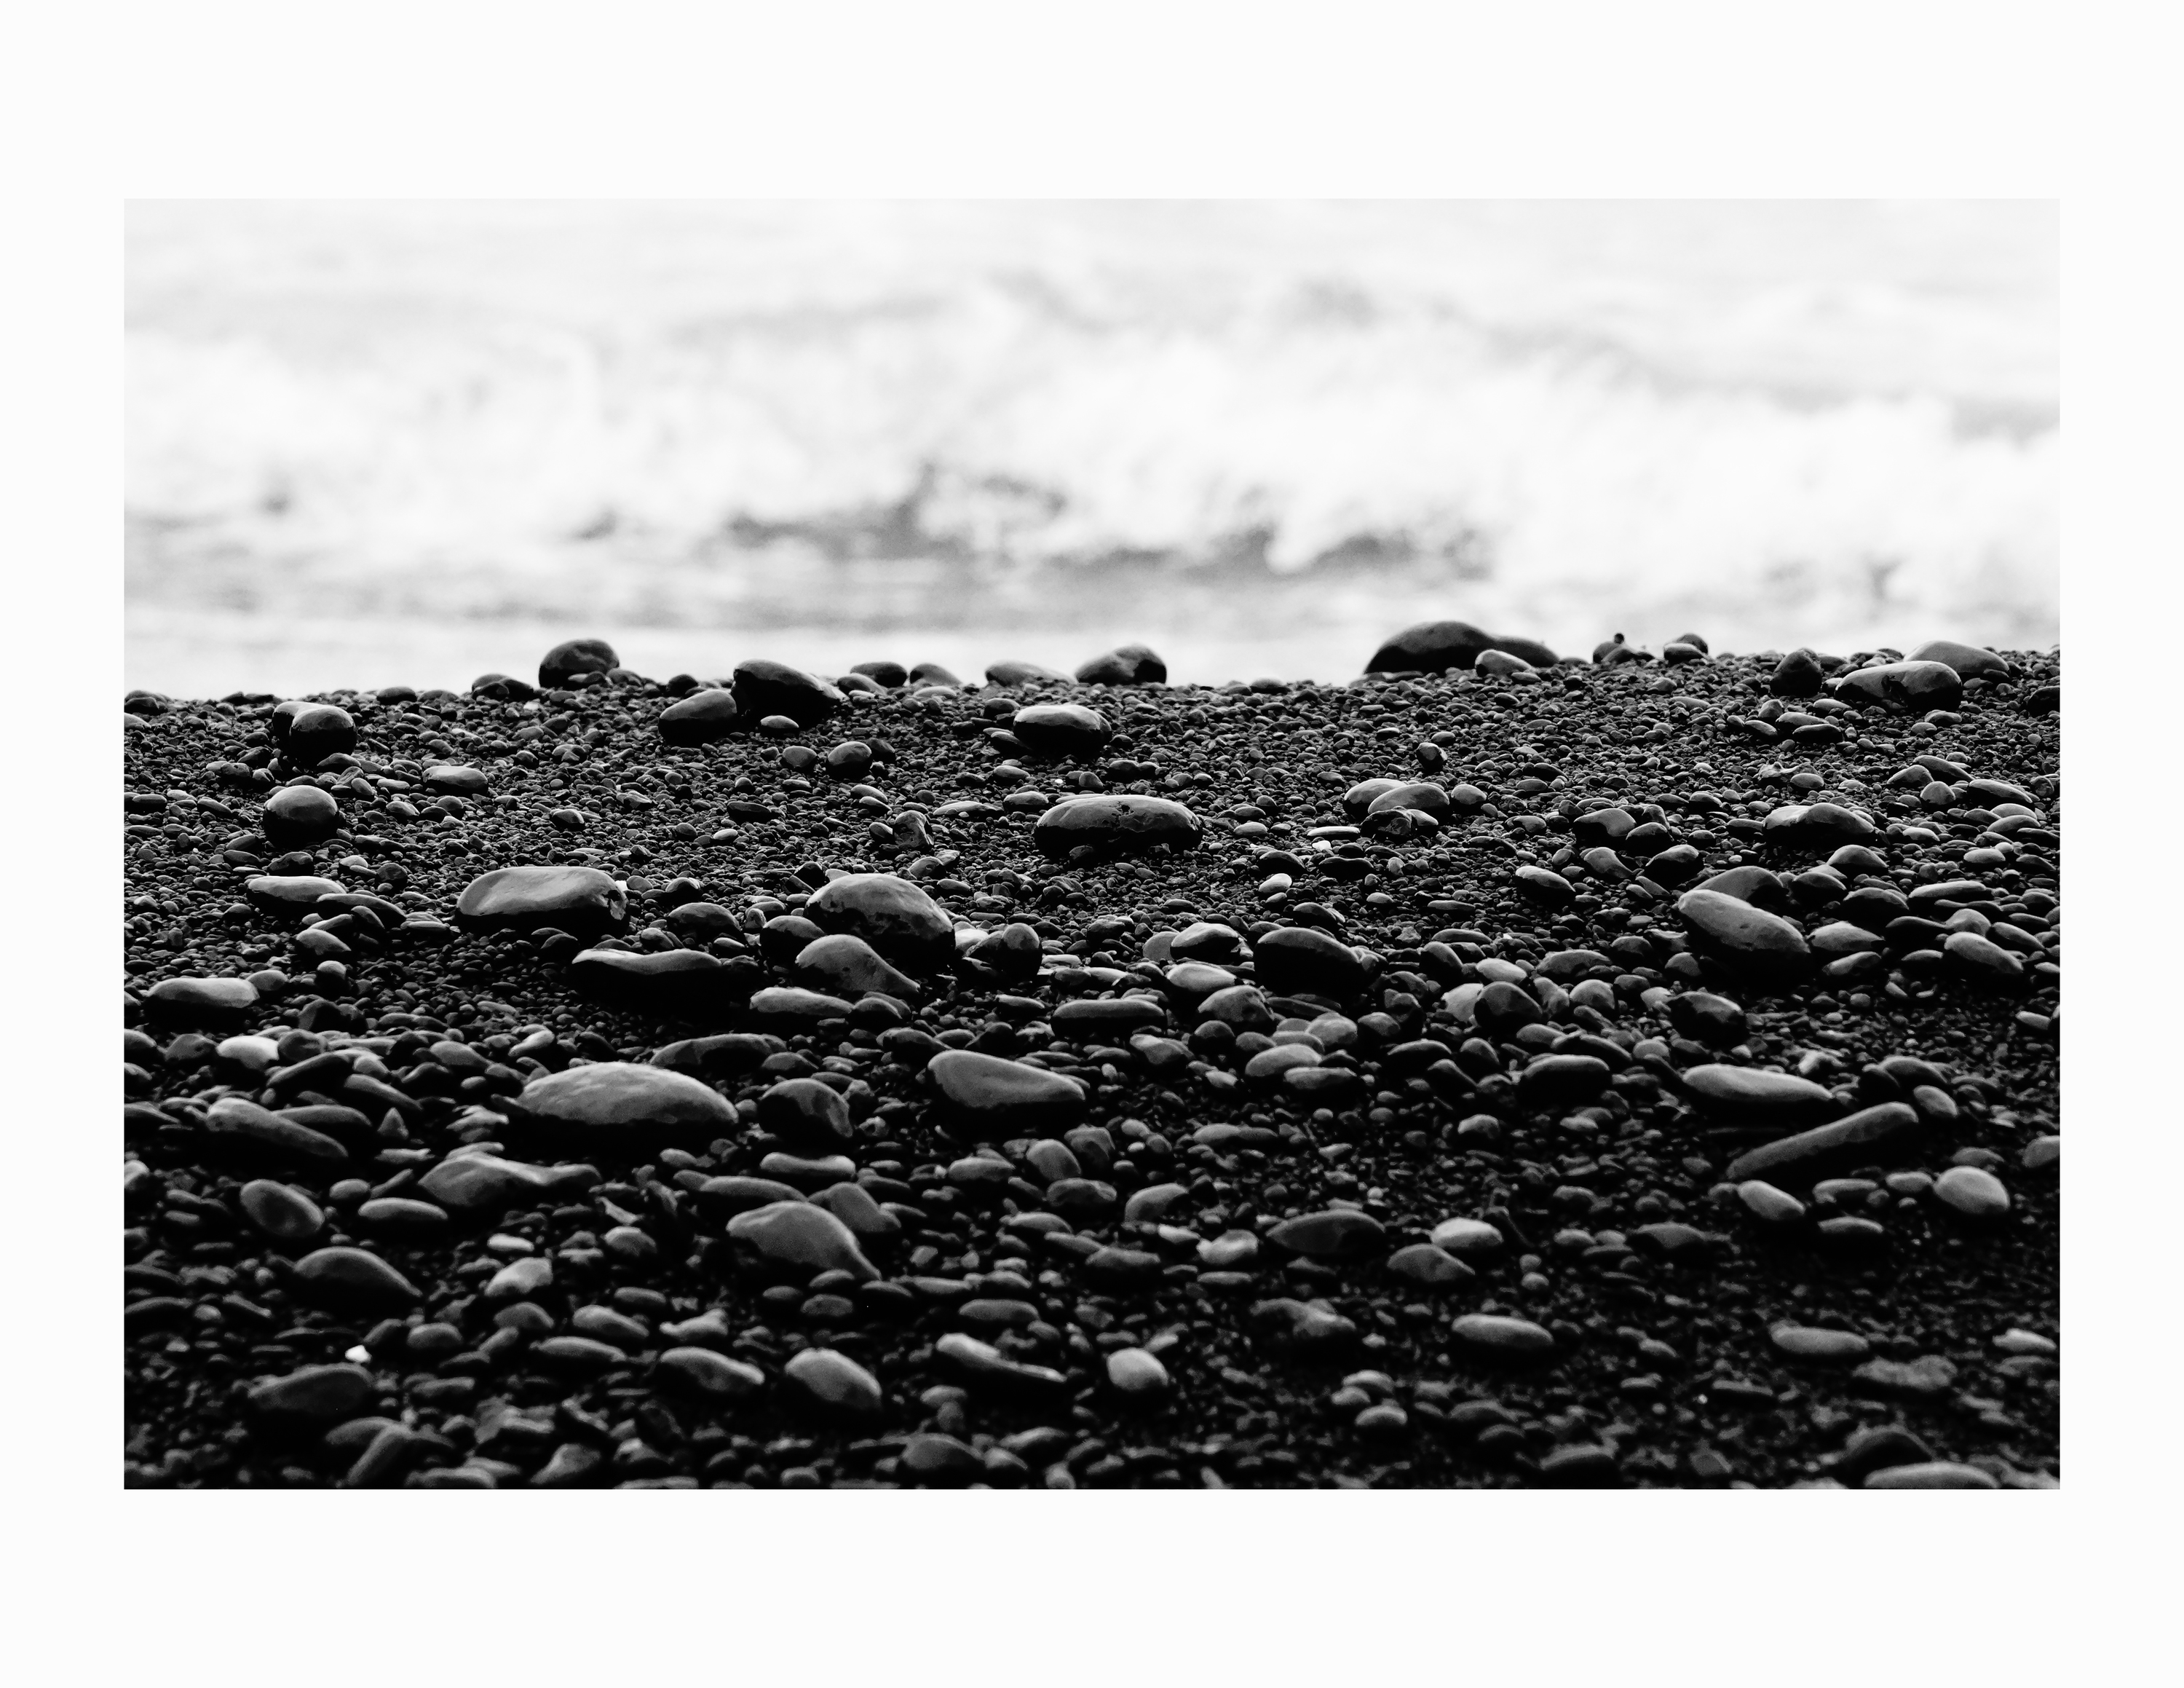 Maui beach black sand 1.0 kaw7yr